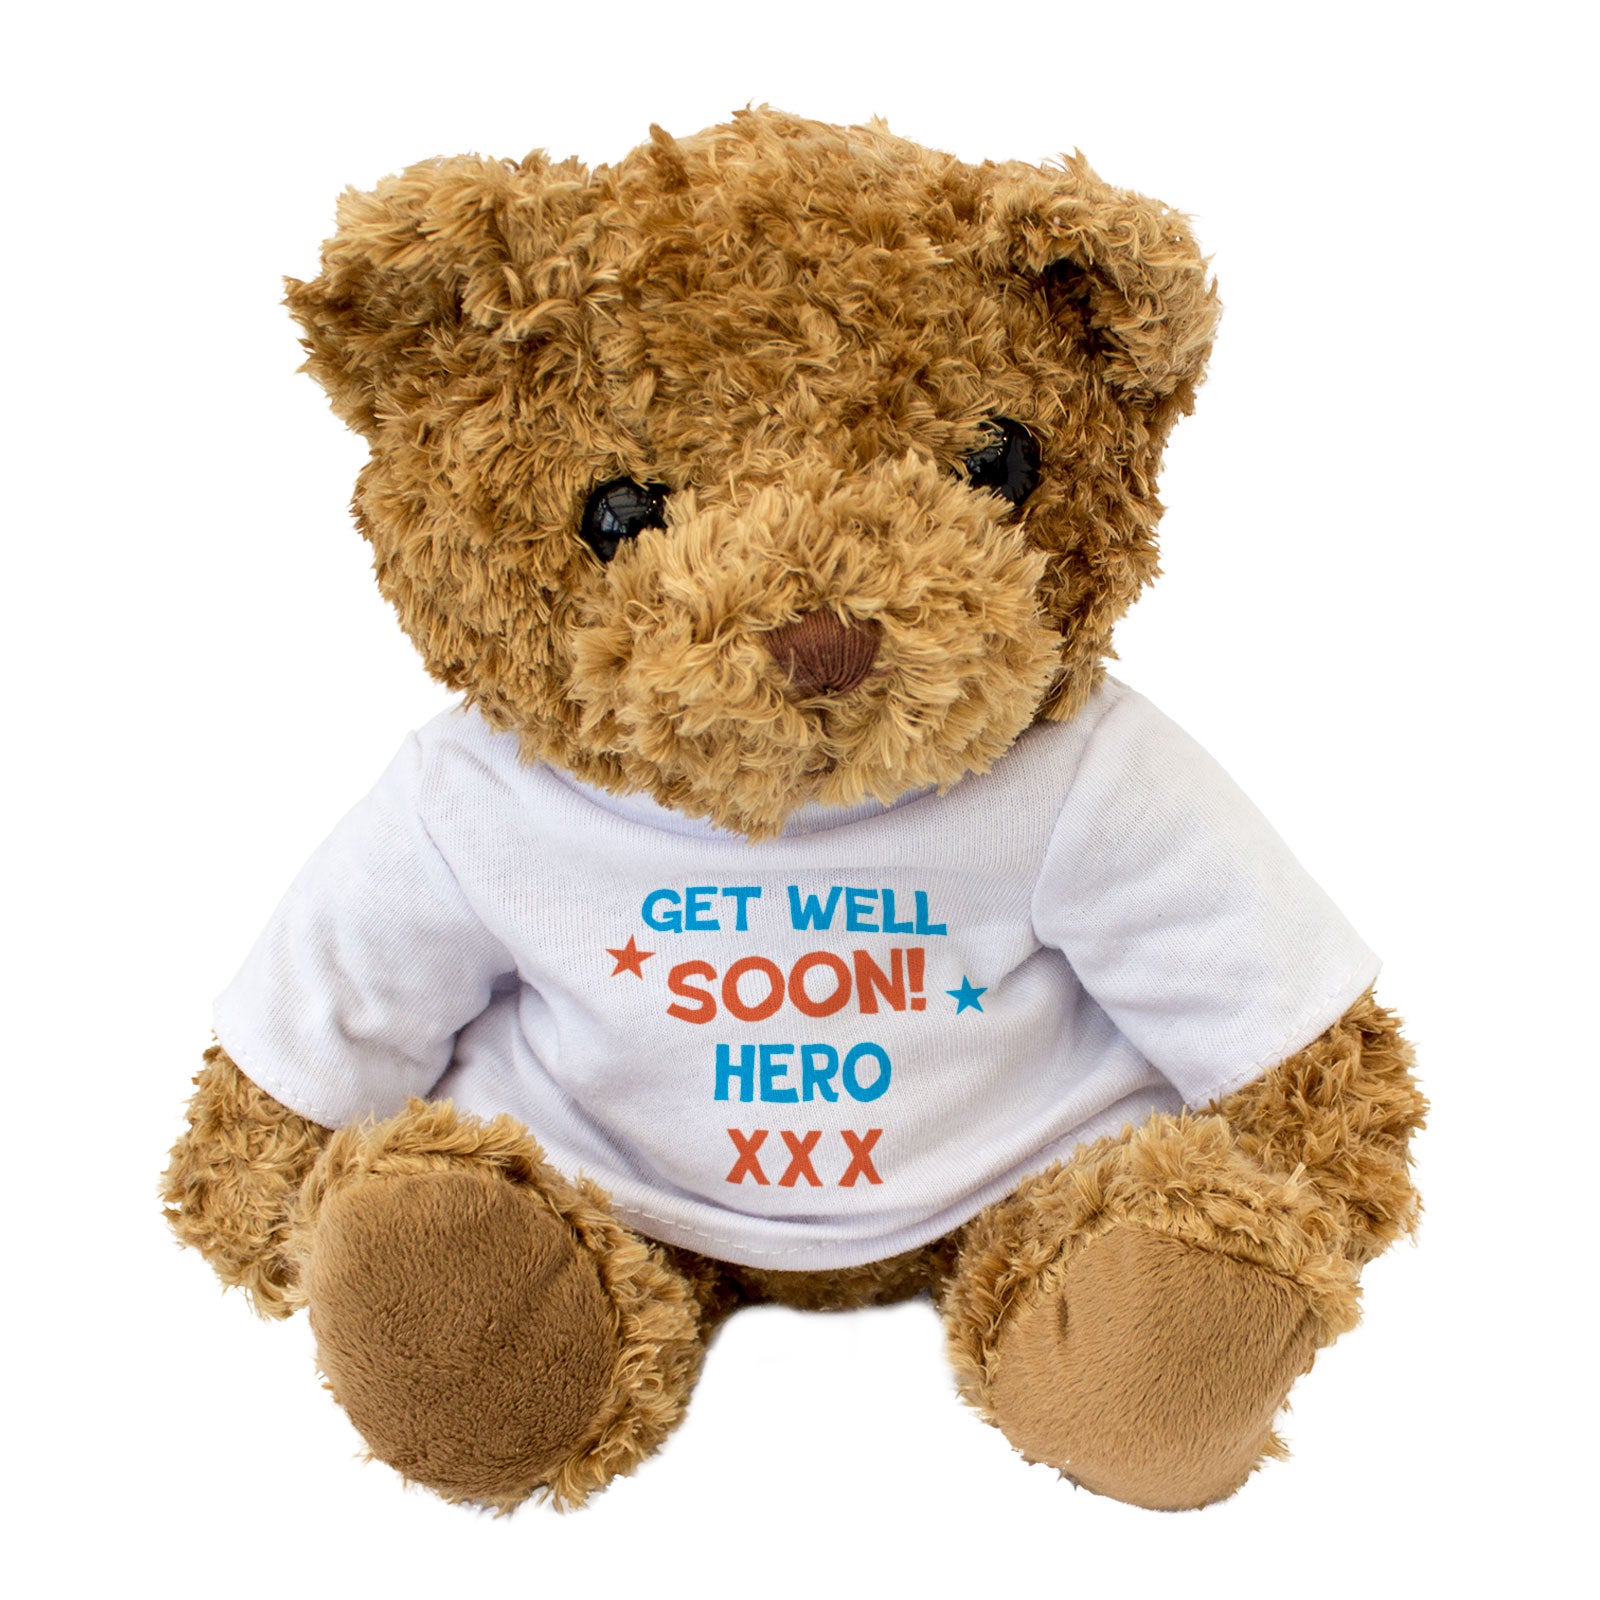 Get Well Soon Hero - Teddy Bear